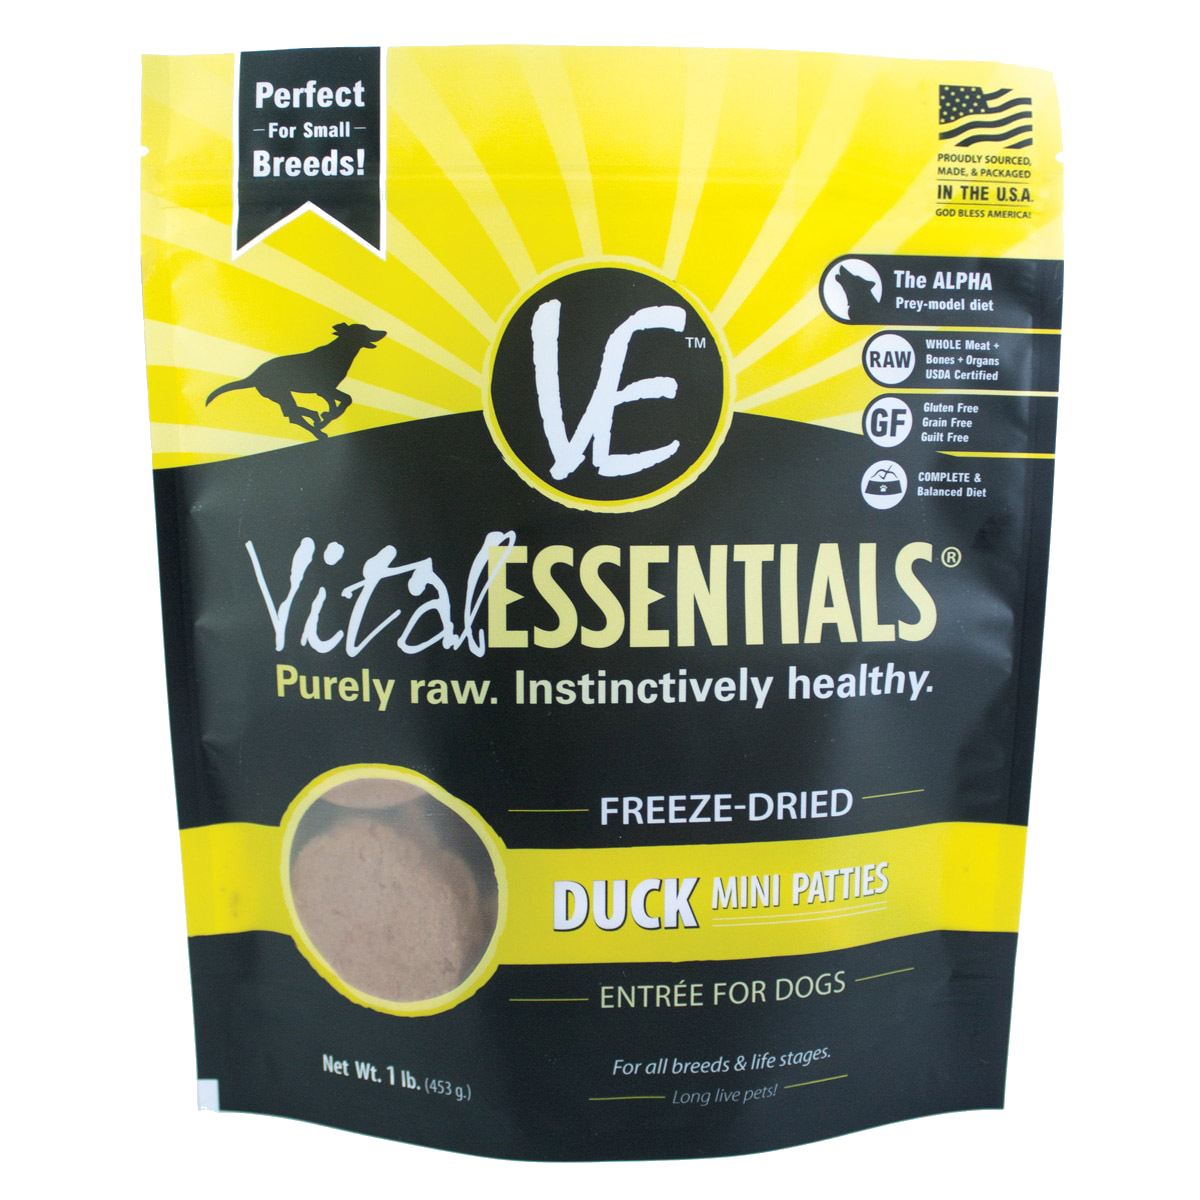 Vital Essentials Freeze-Dried Duck Mini Patties